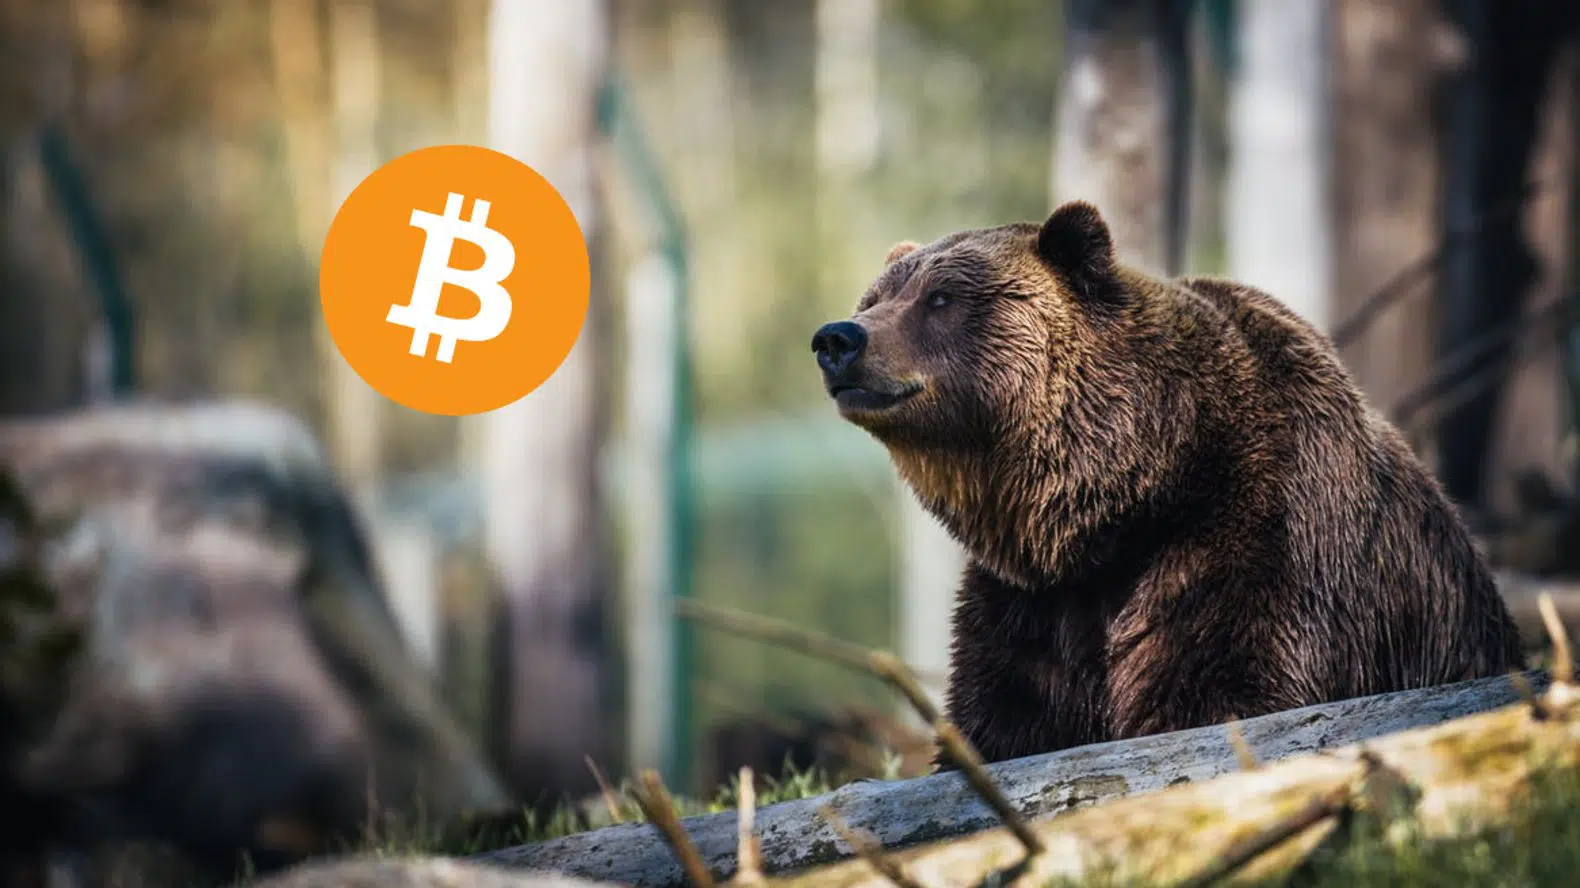 Bütün Döngülerde Yaşandı! Bitcoin’de Ayı Piyasası Onaylanacak Mı?